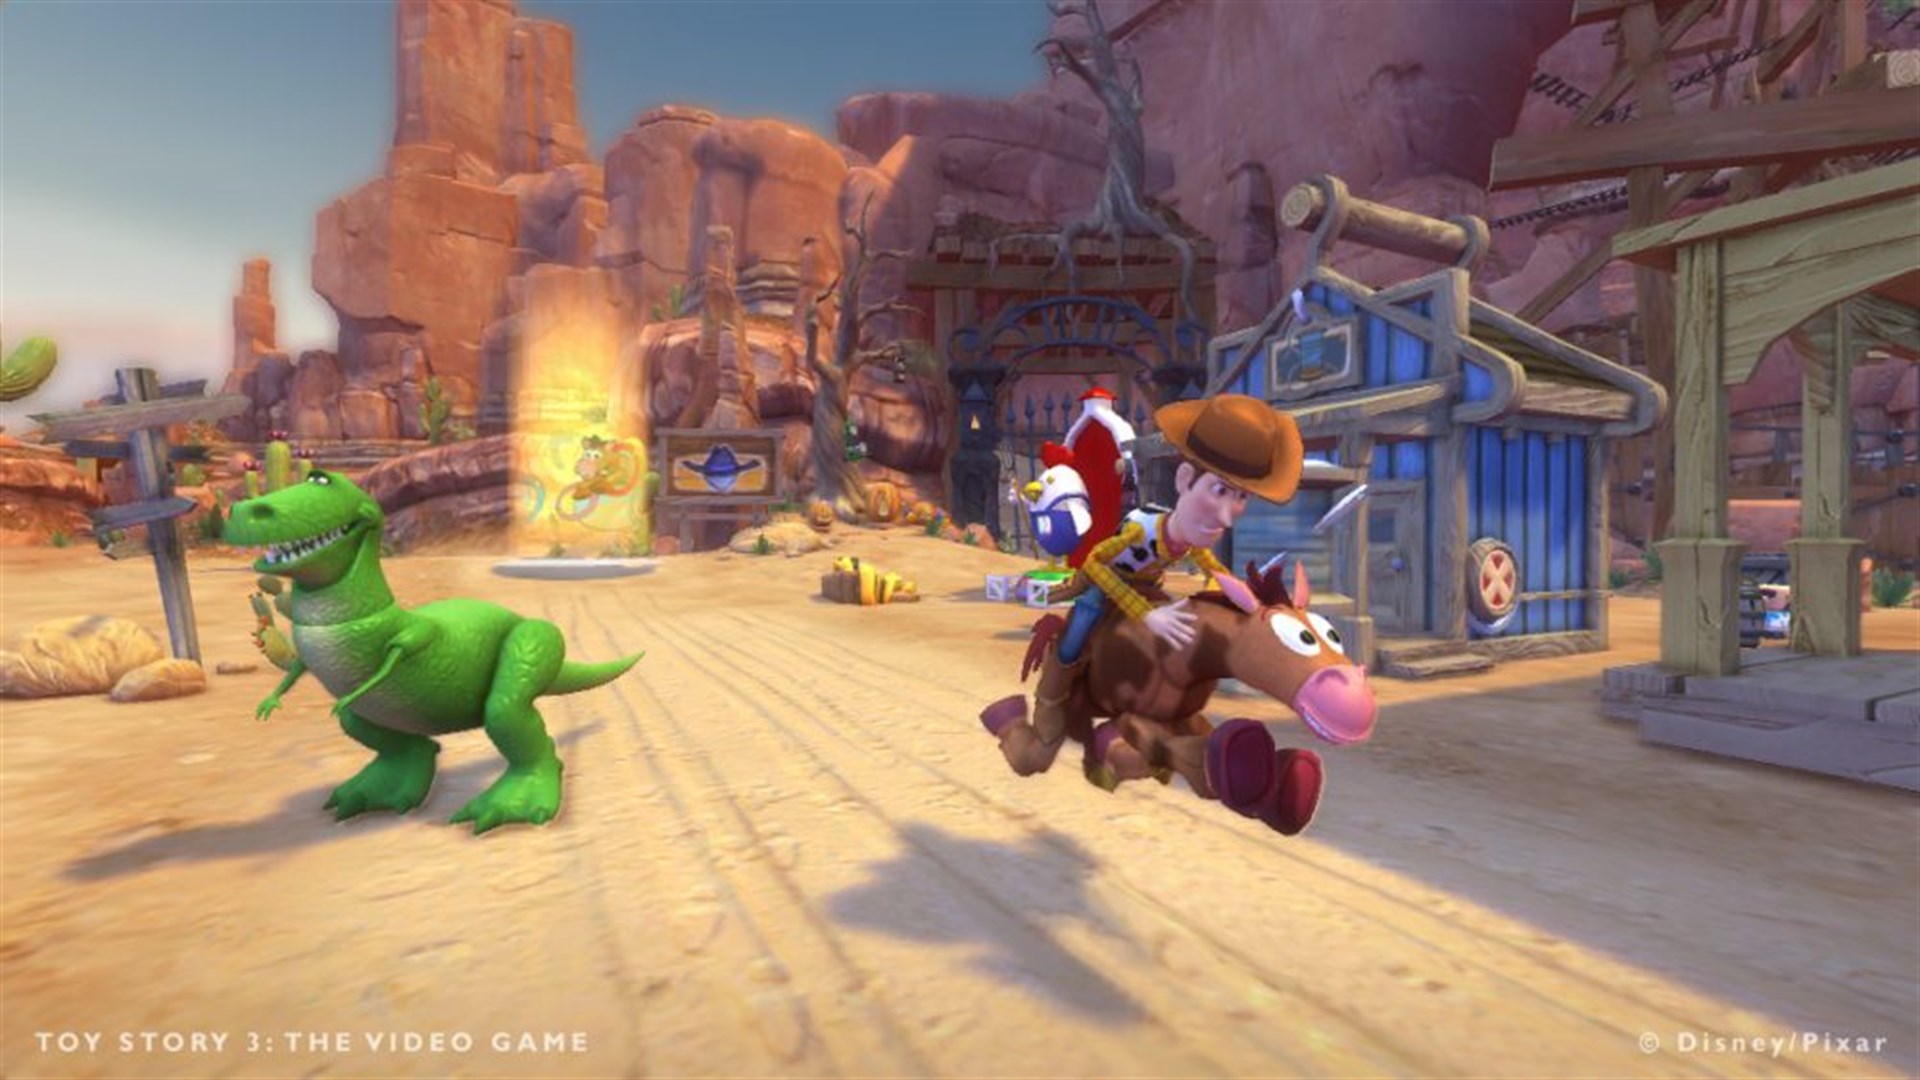 Adventure story 3. Toy story 3 Xbox 360. Игра Disney Pixar Toy story 3. История игрушек большой побег Xbox 360. История игрушек игра на хбокс 360.